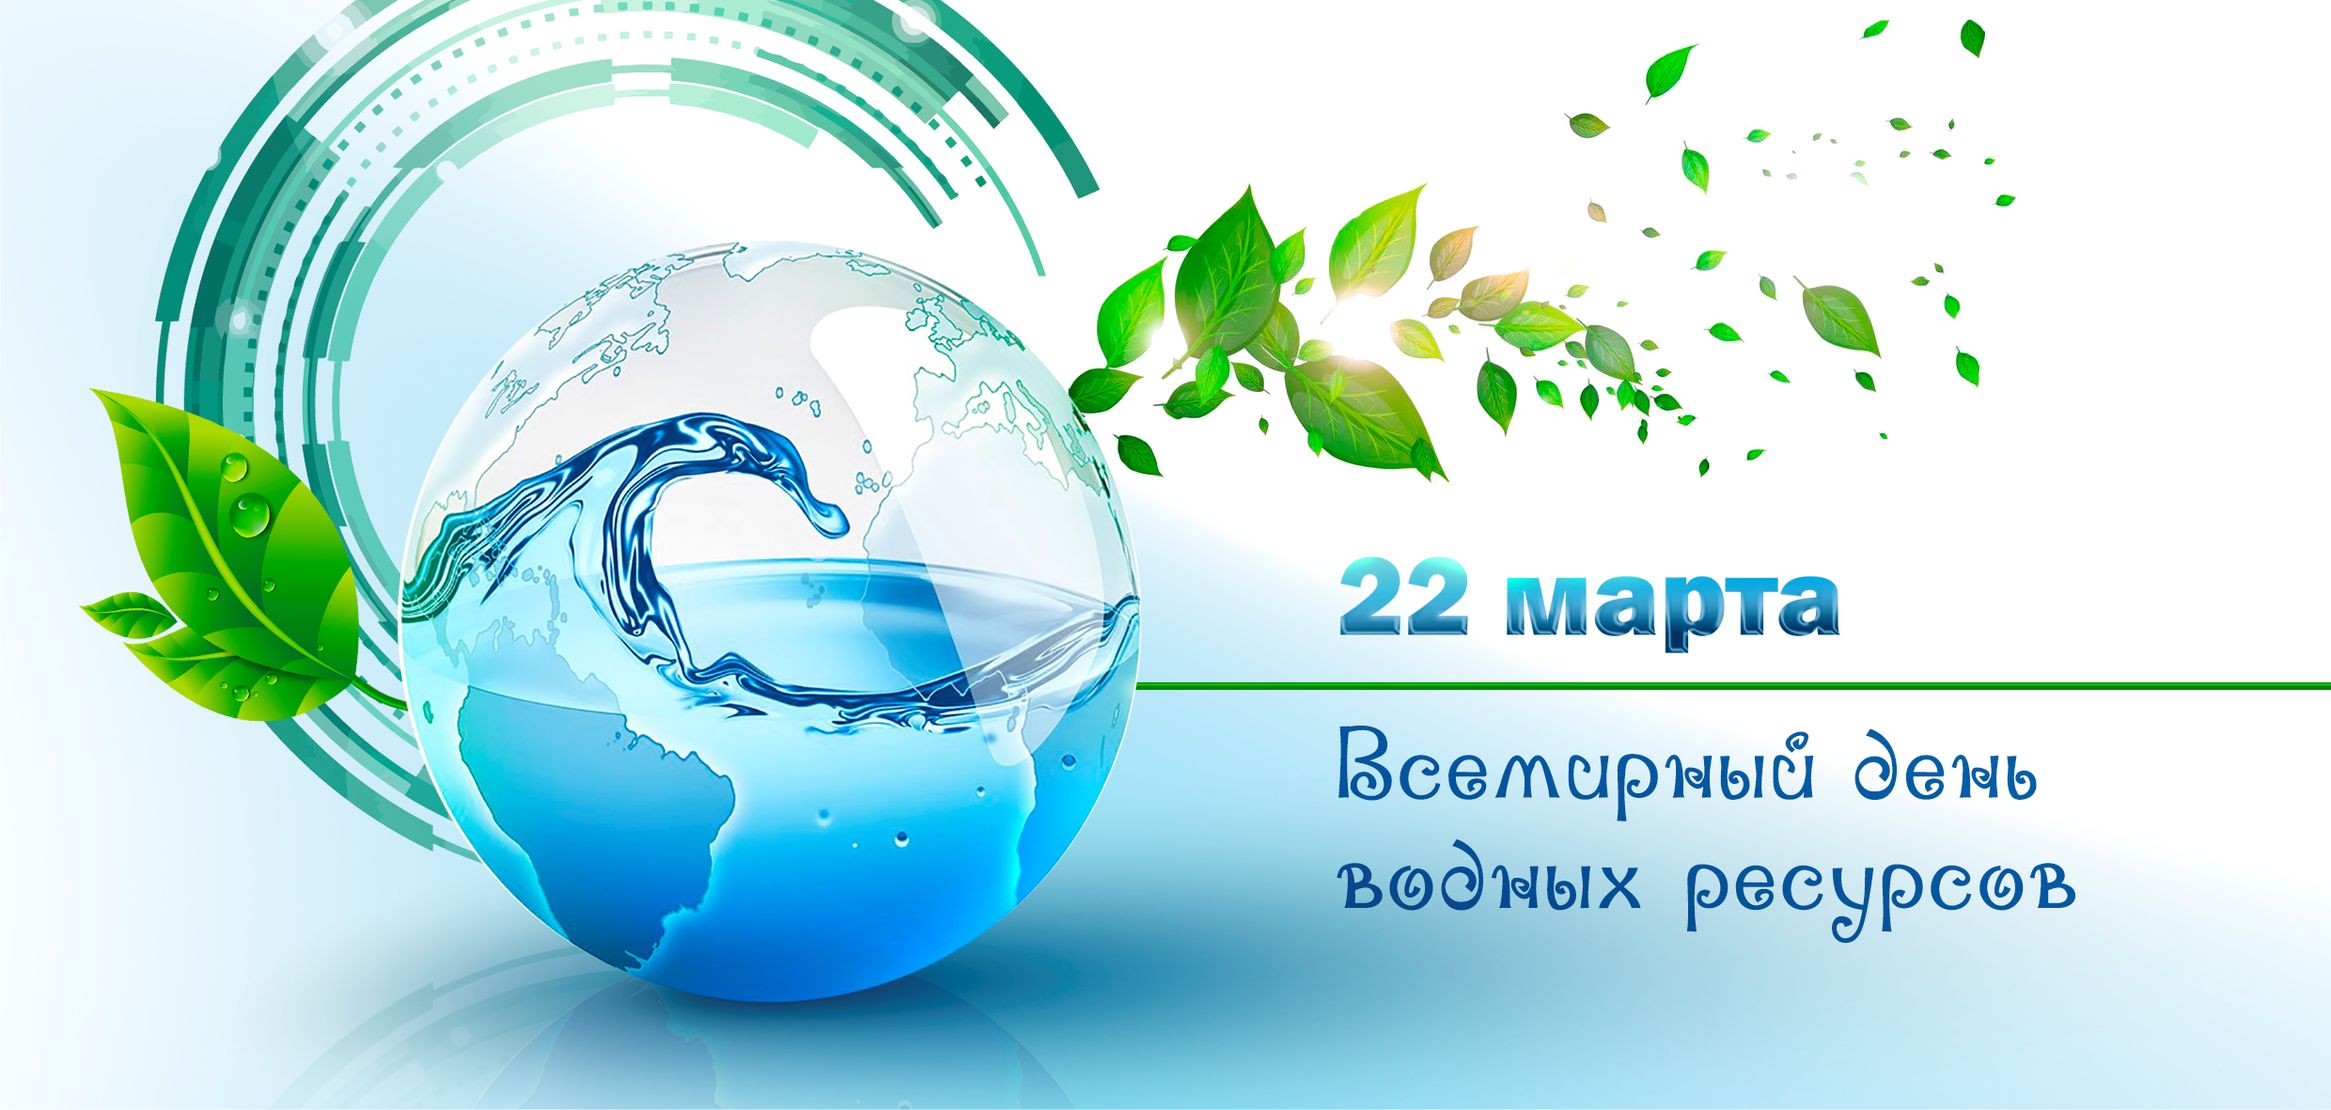 Всемирный день водных ресурсов дата рисунок символ